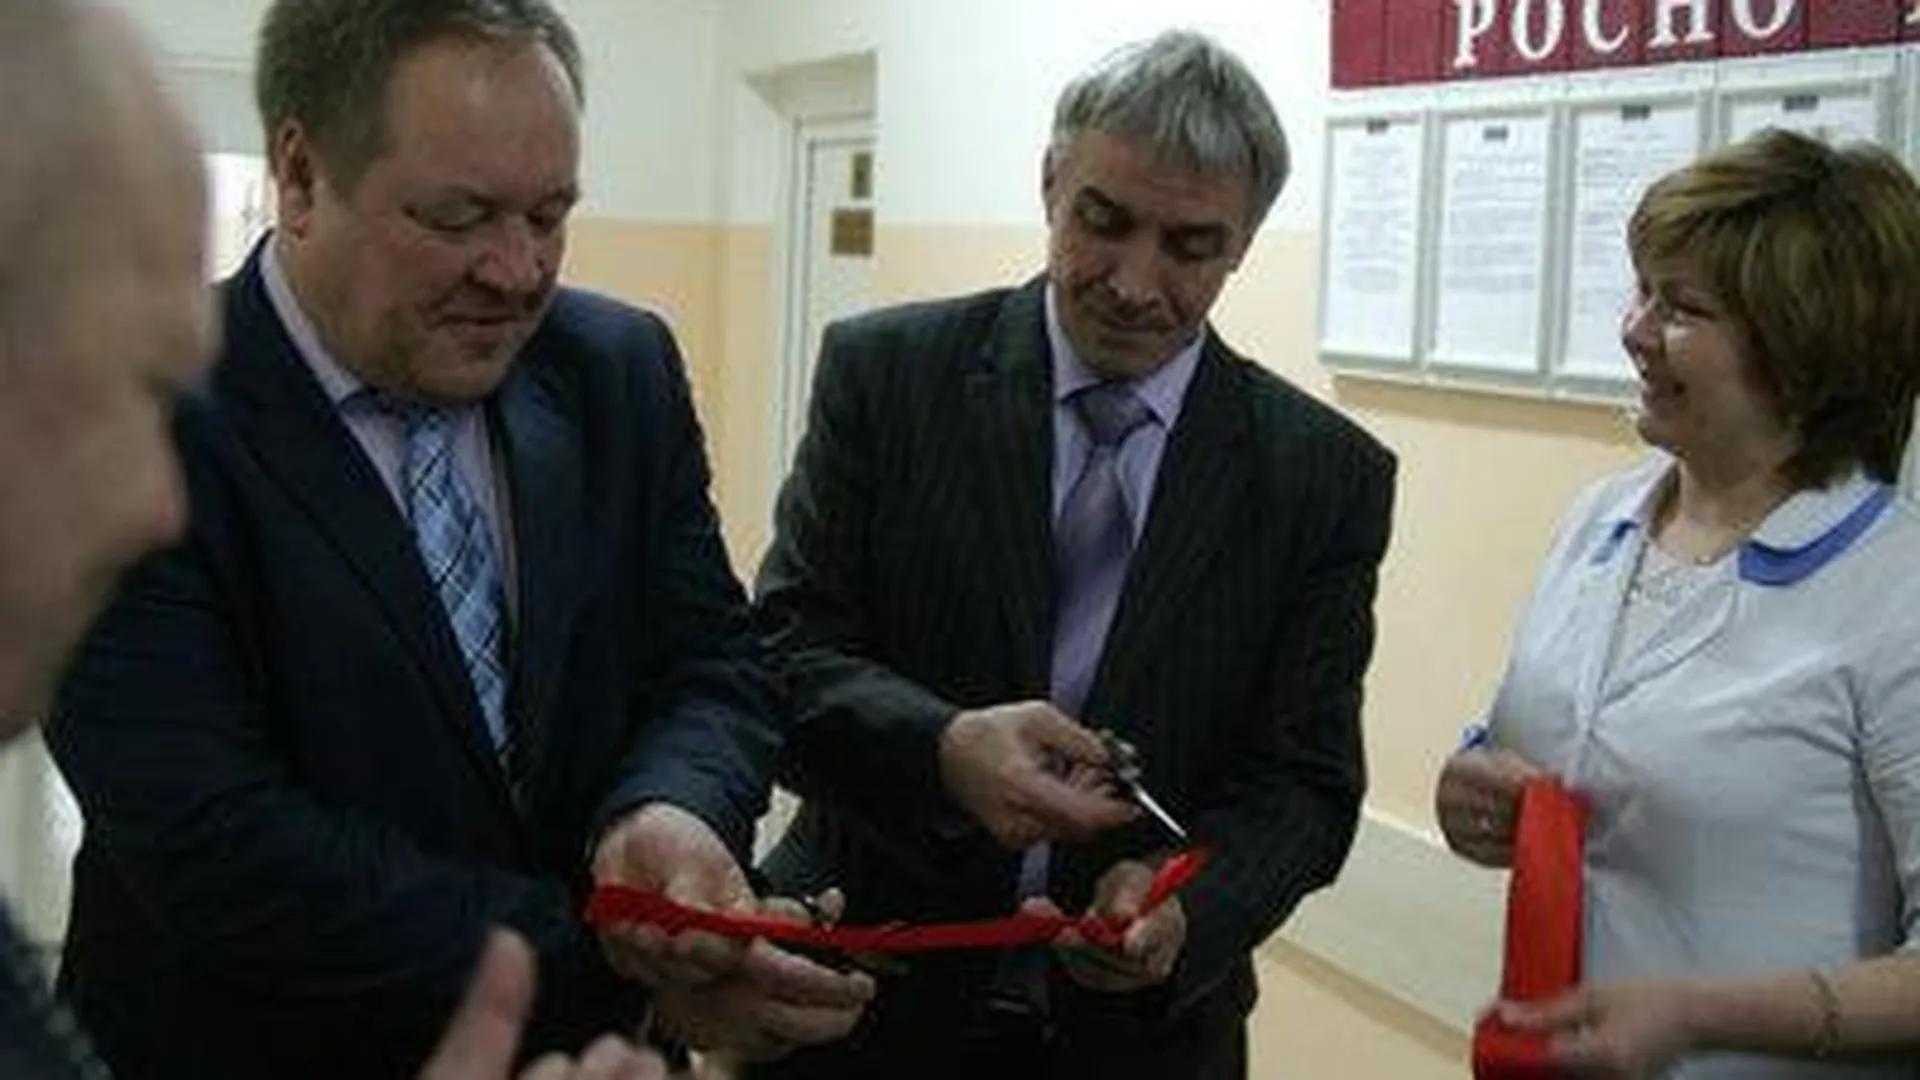 Поликлинику в Солнечногорском районе отремонтировали впервые за 50 лет